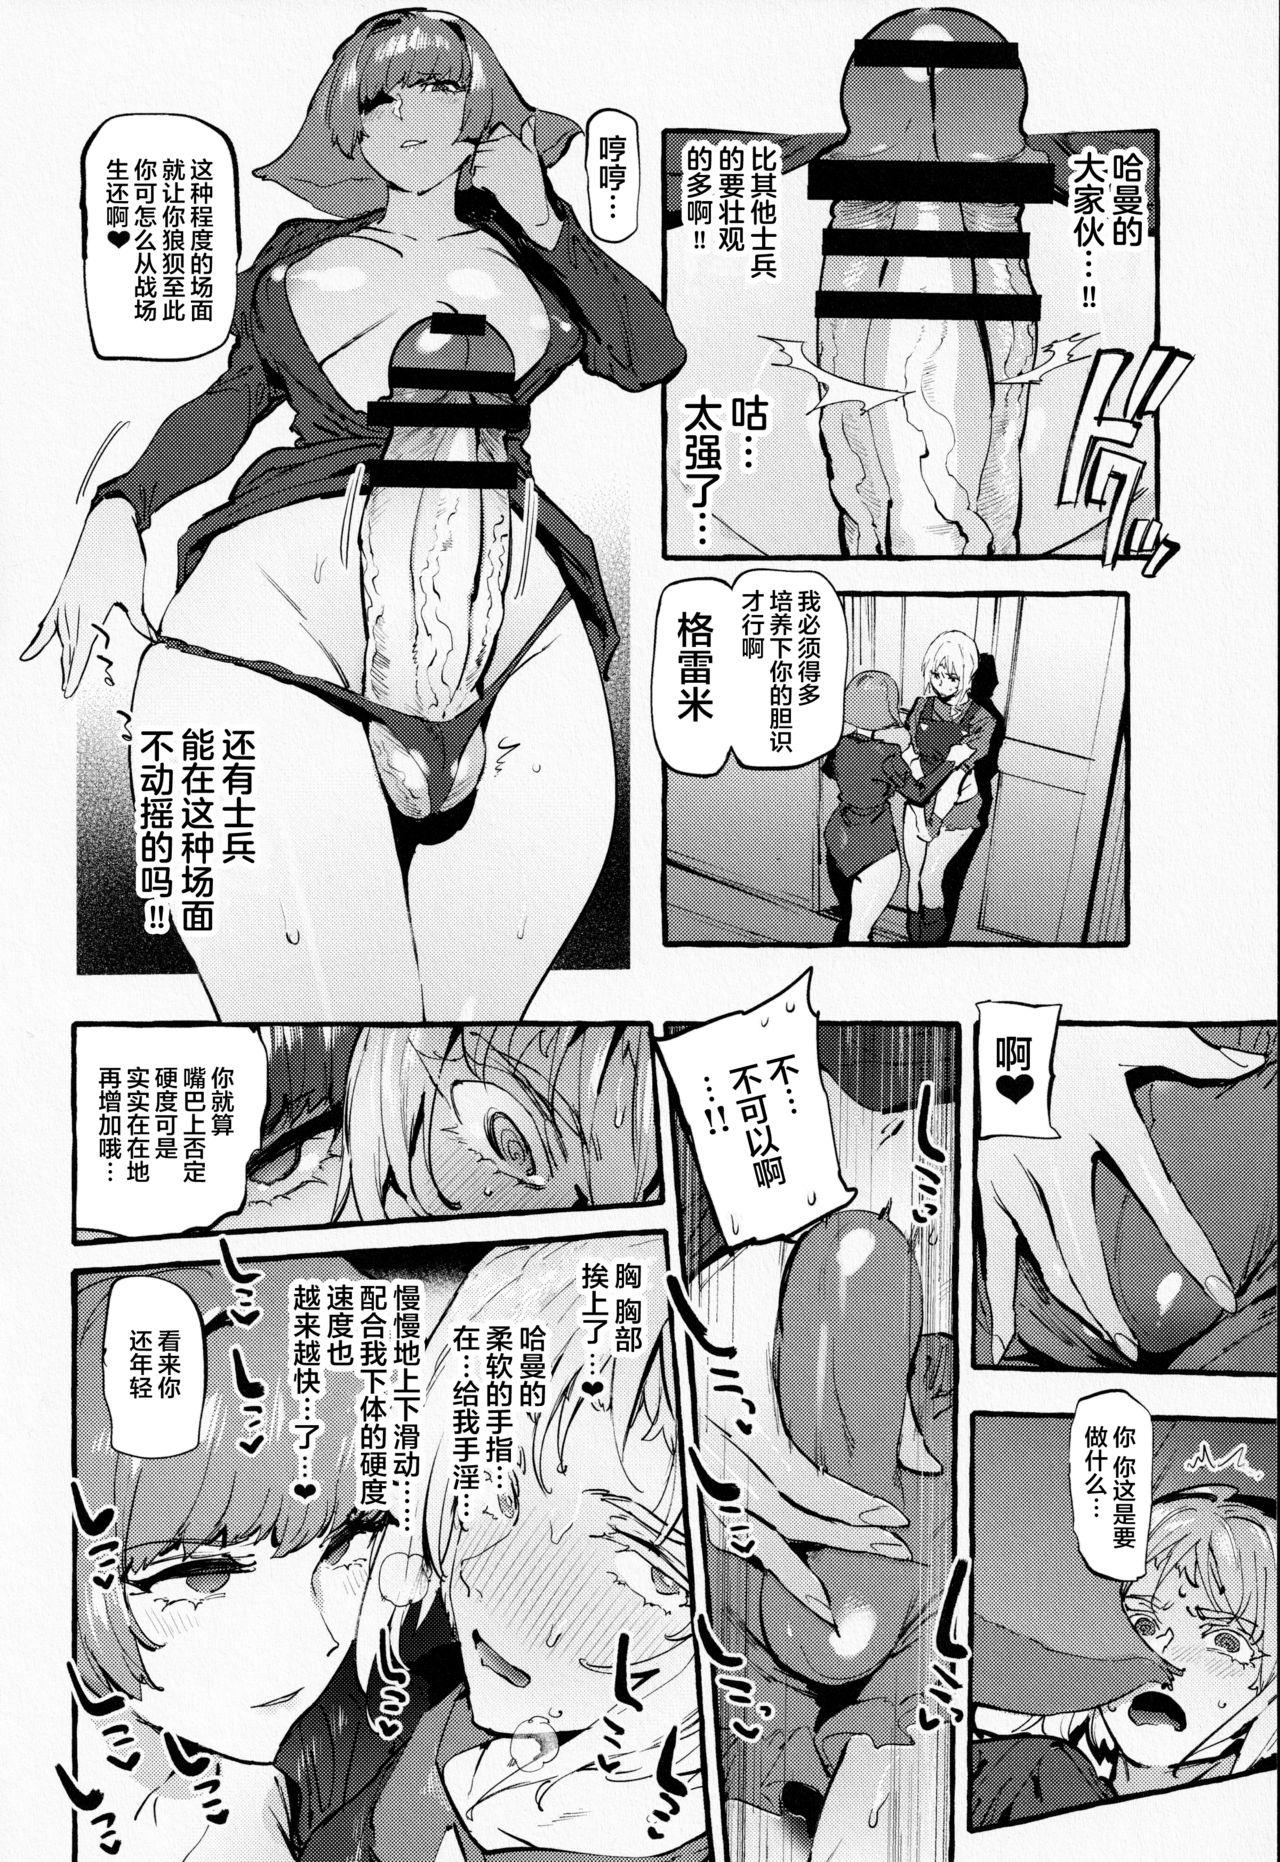 Cojiendo Haman-sama no Uchuu Seiki - Gundam zz Celebrities - Page 6